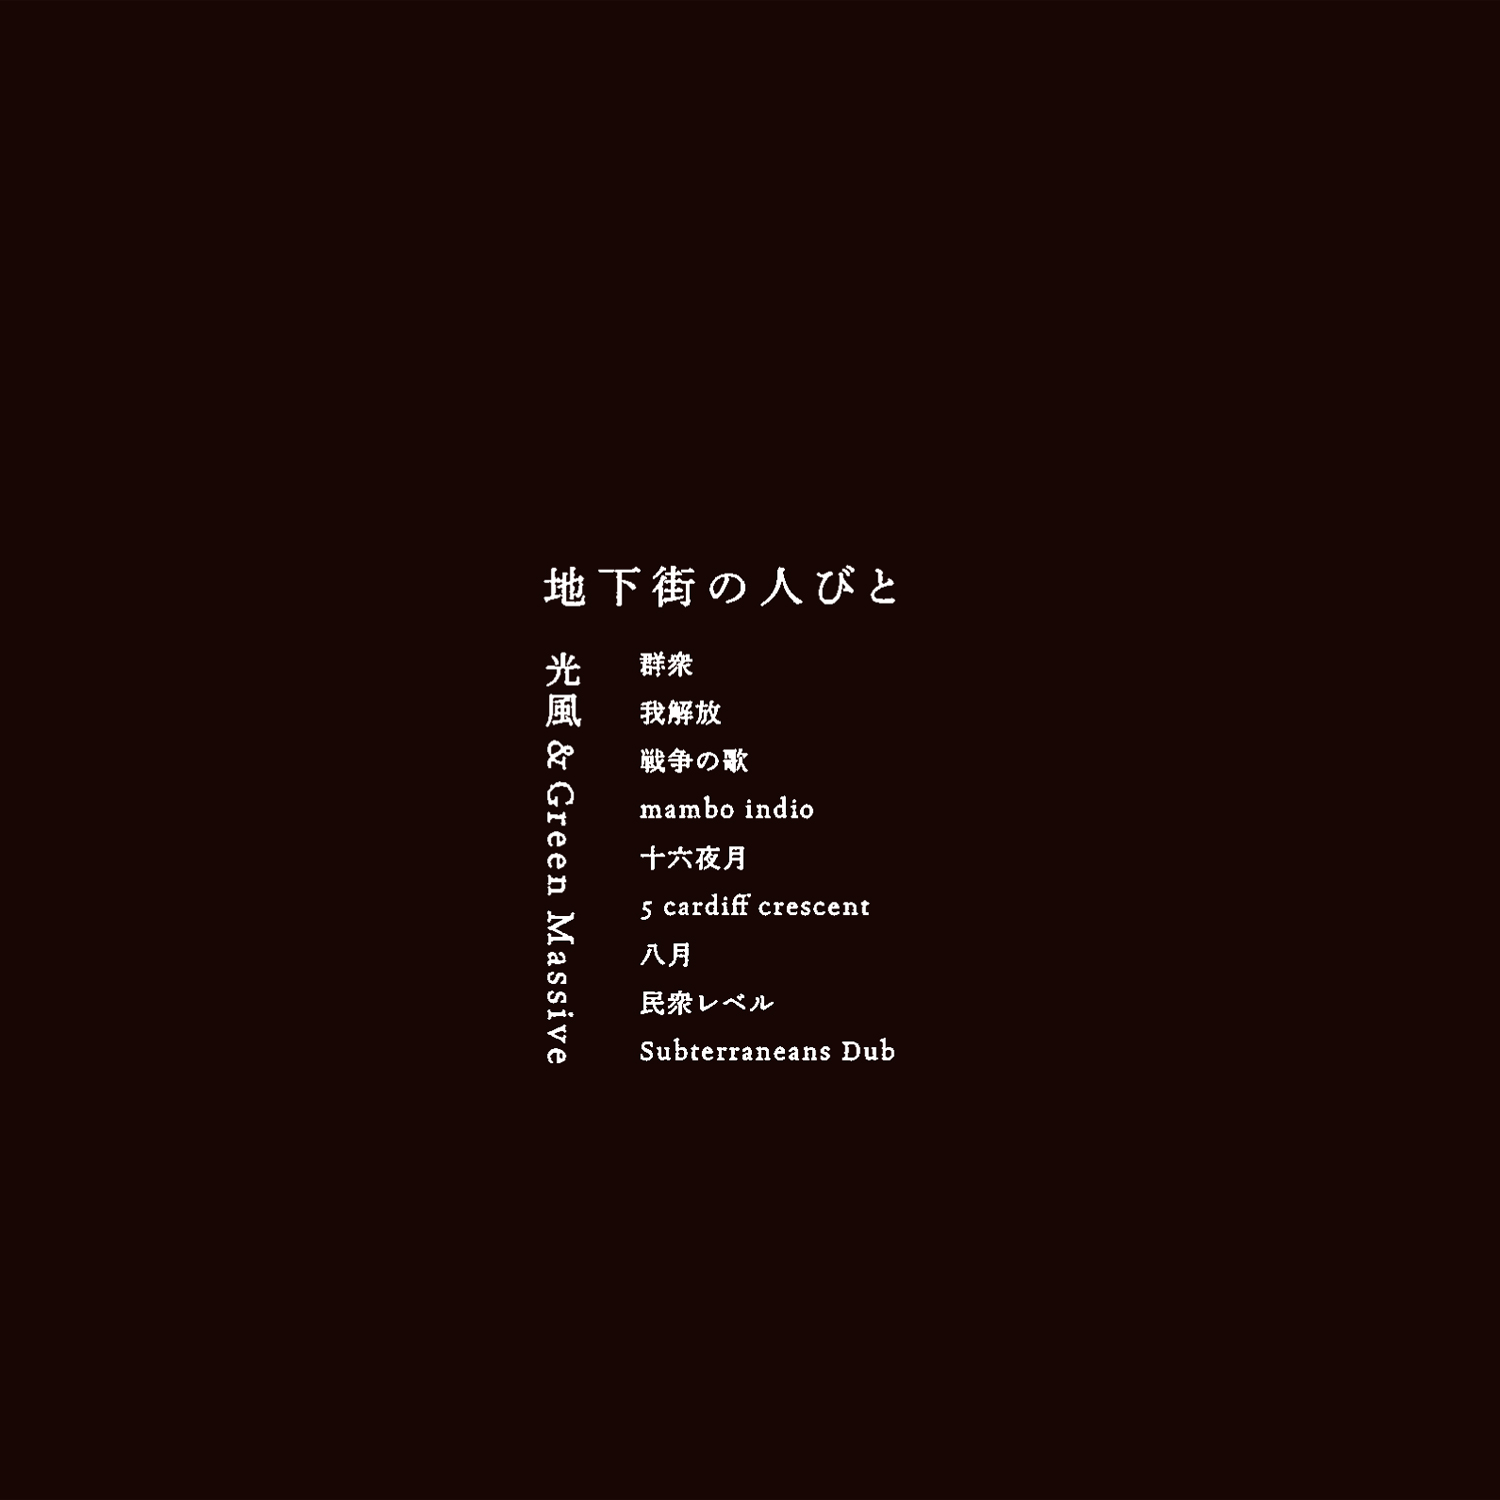 4th album chikagai no hitobito